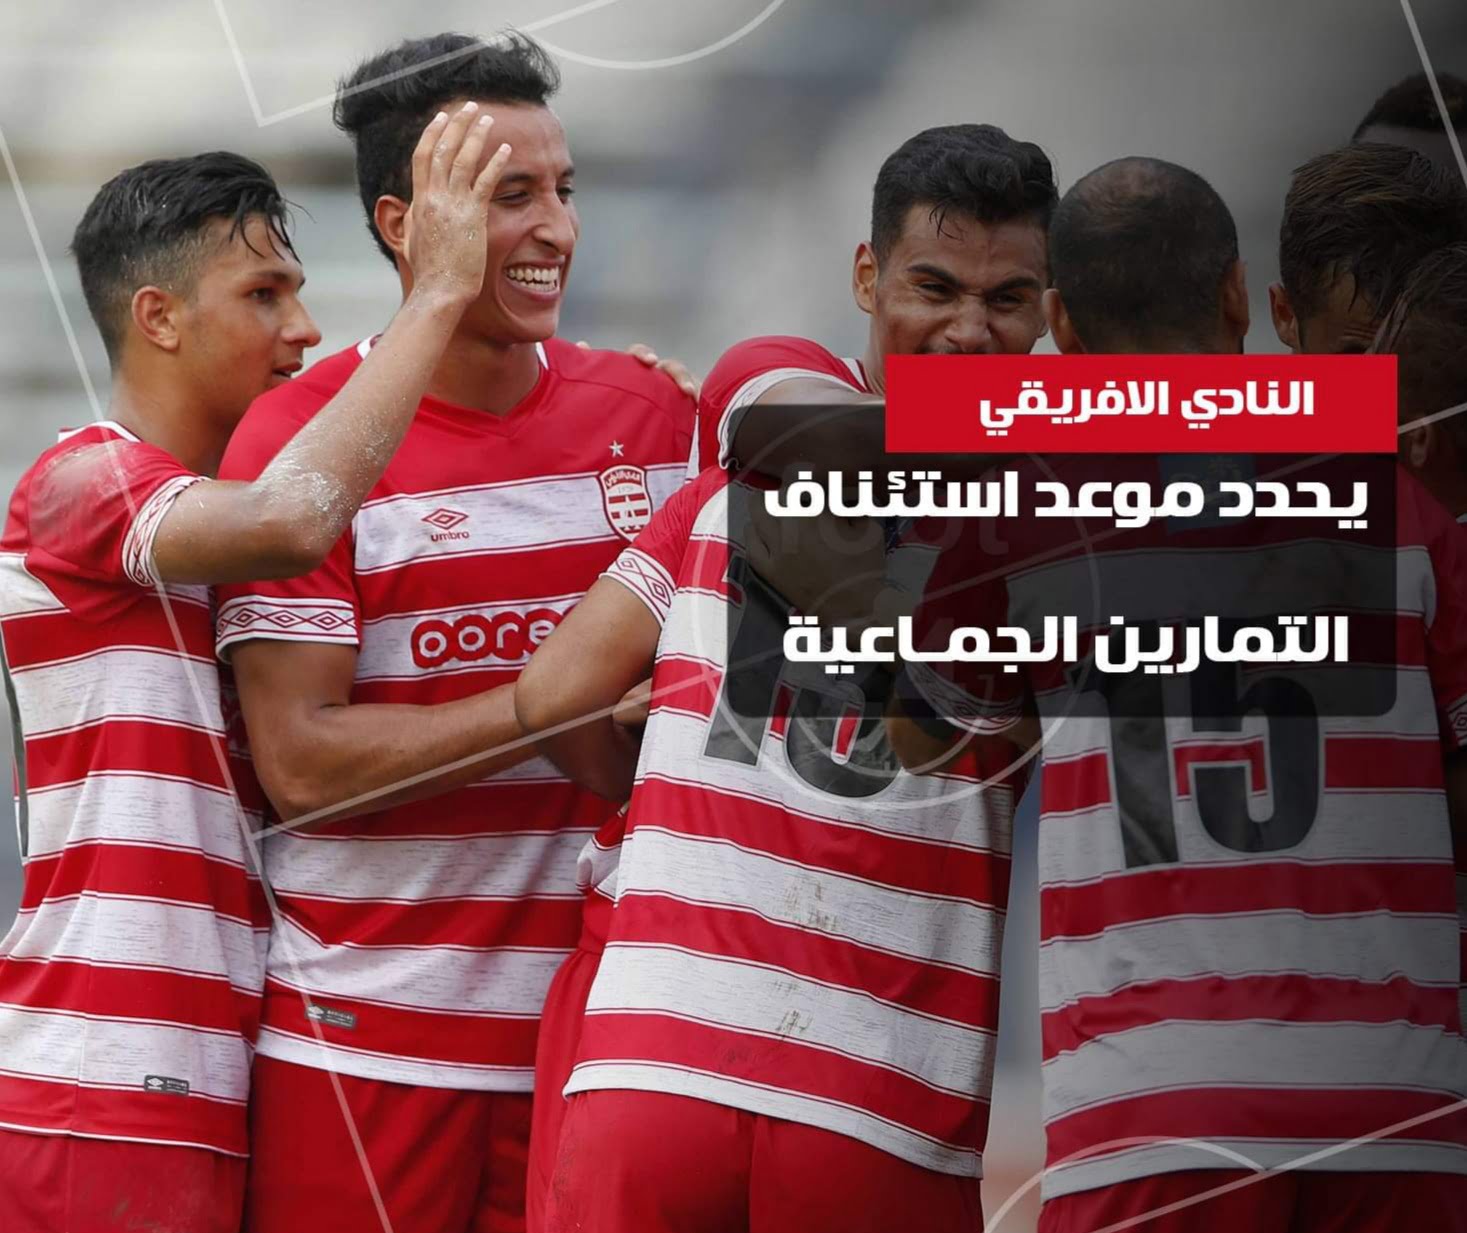 في ظل الـ كورونا : النادي الافريقي أول فريق تونسي يعود إلى التدريبات الجماعية